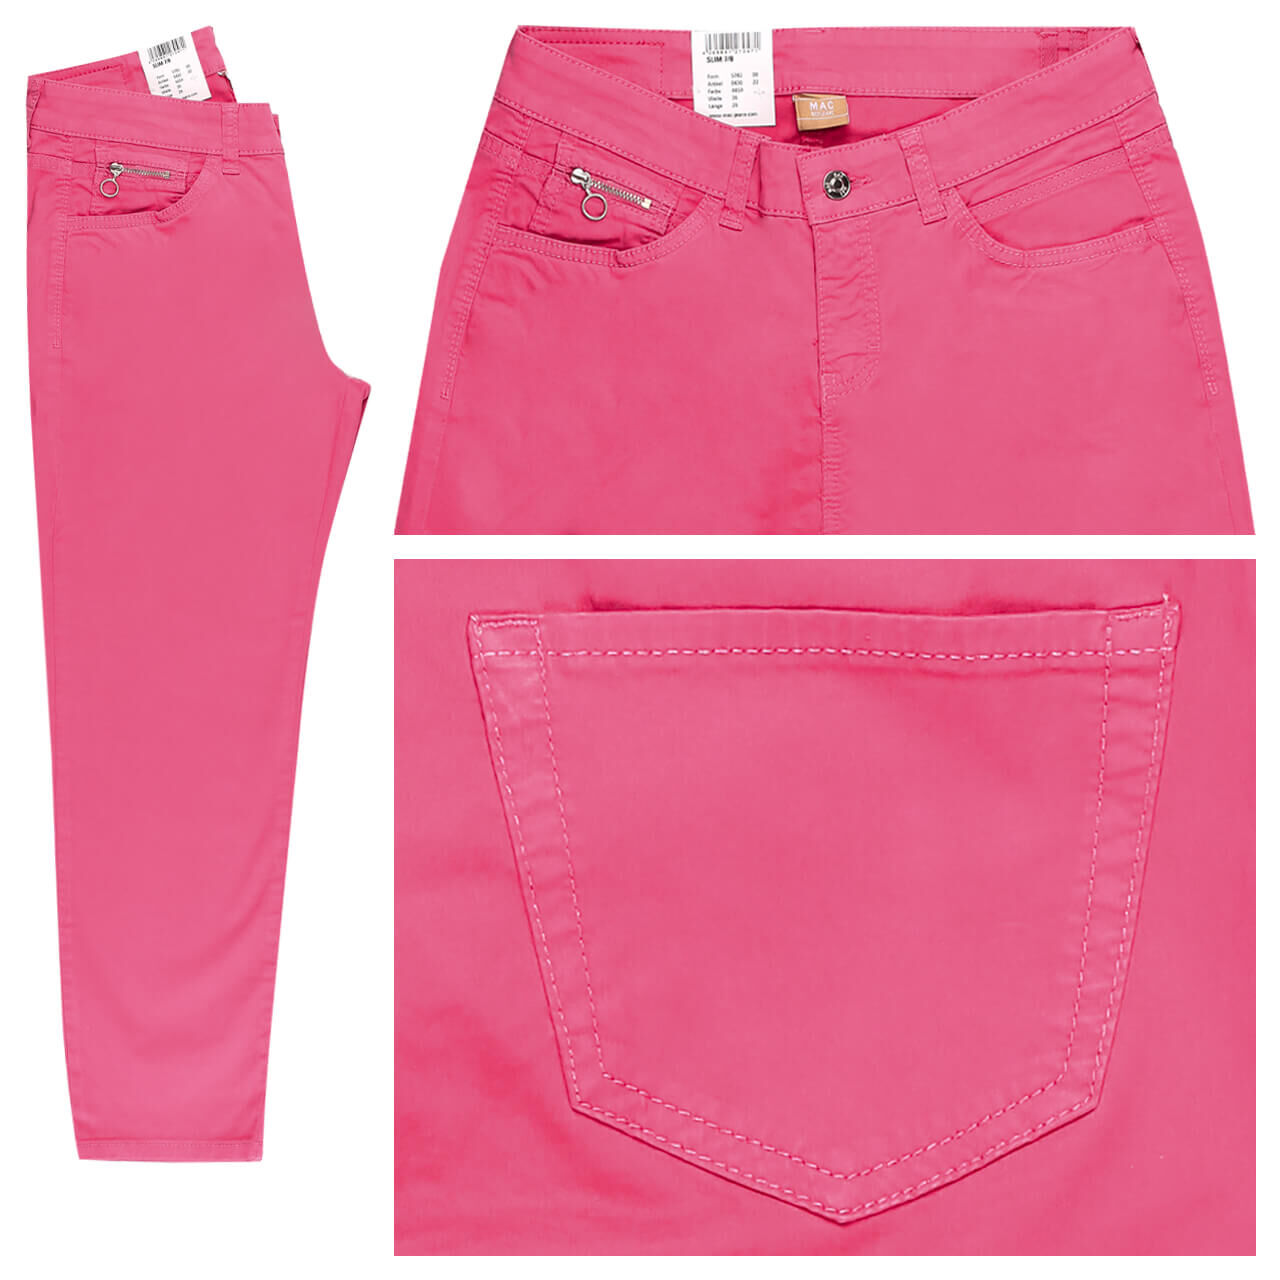 MAC Slim 7/8 Baumwollhose für Damen in Pink, FarbNr.: 445R